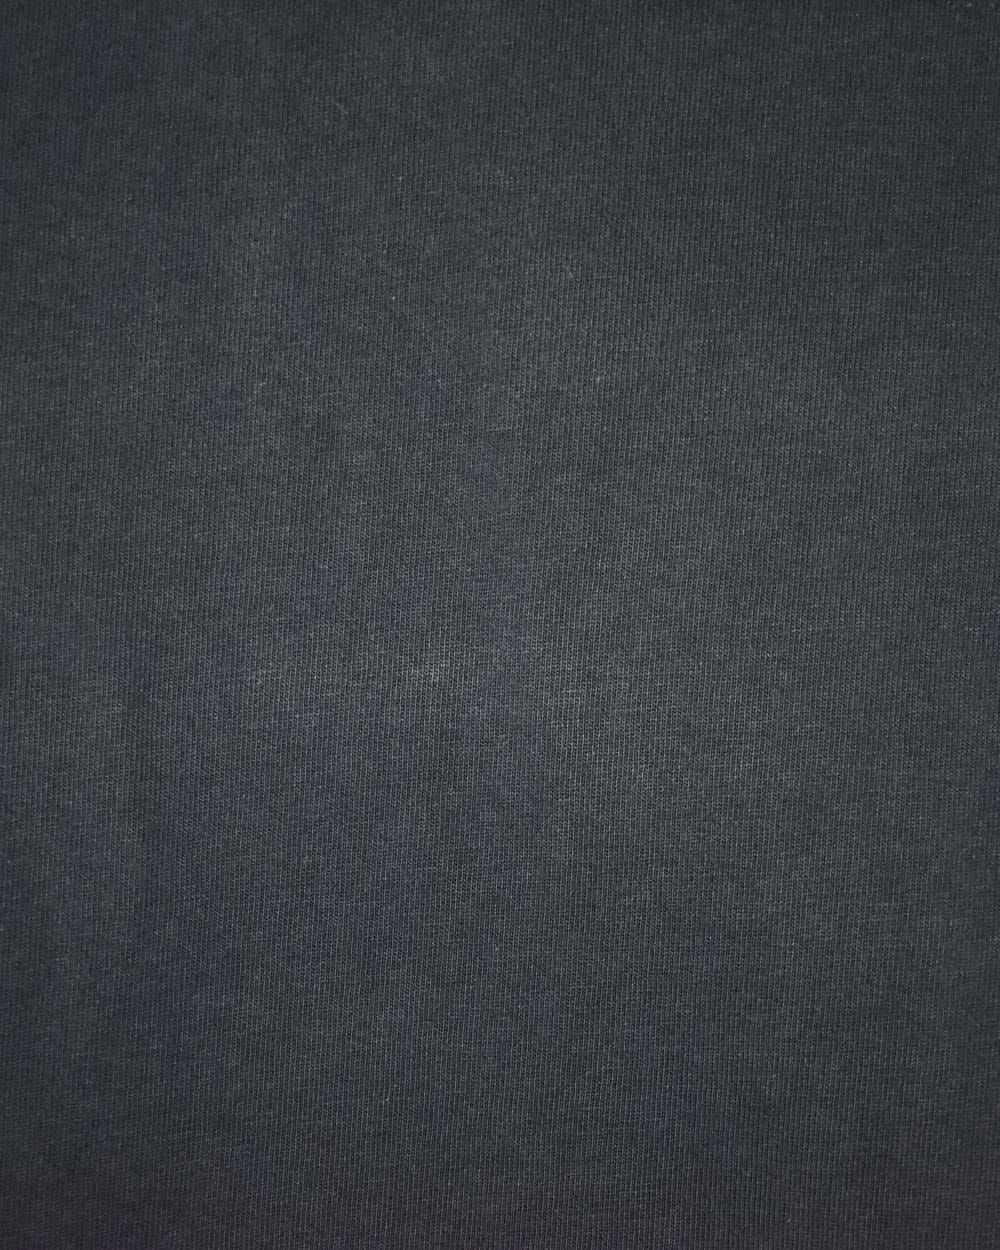 Black Nike T-Shirt - XX-Large